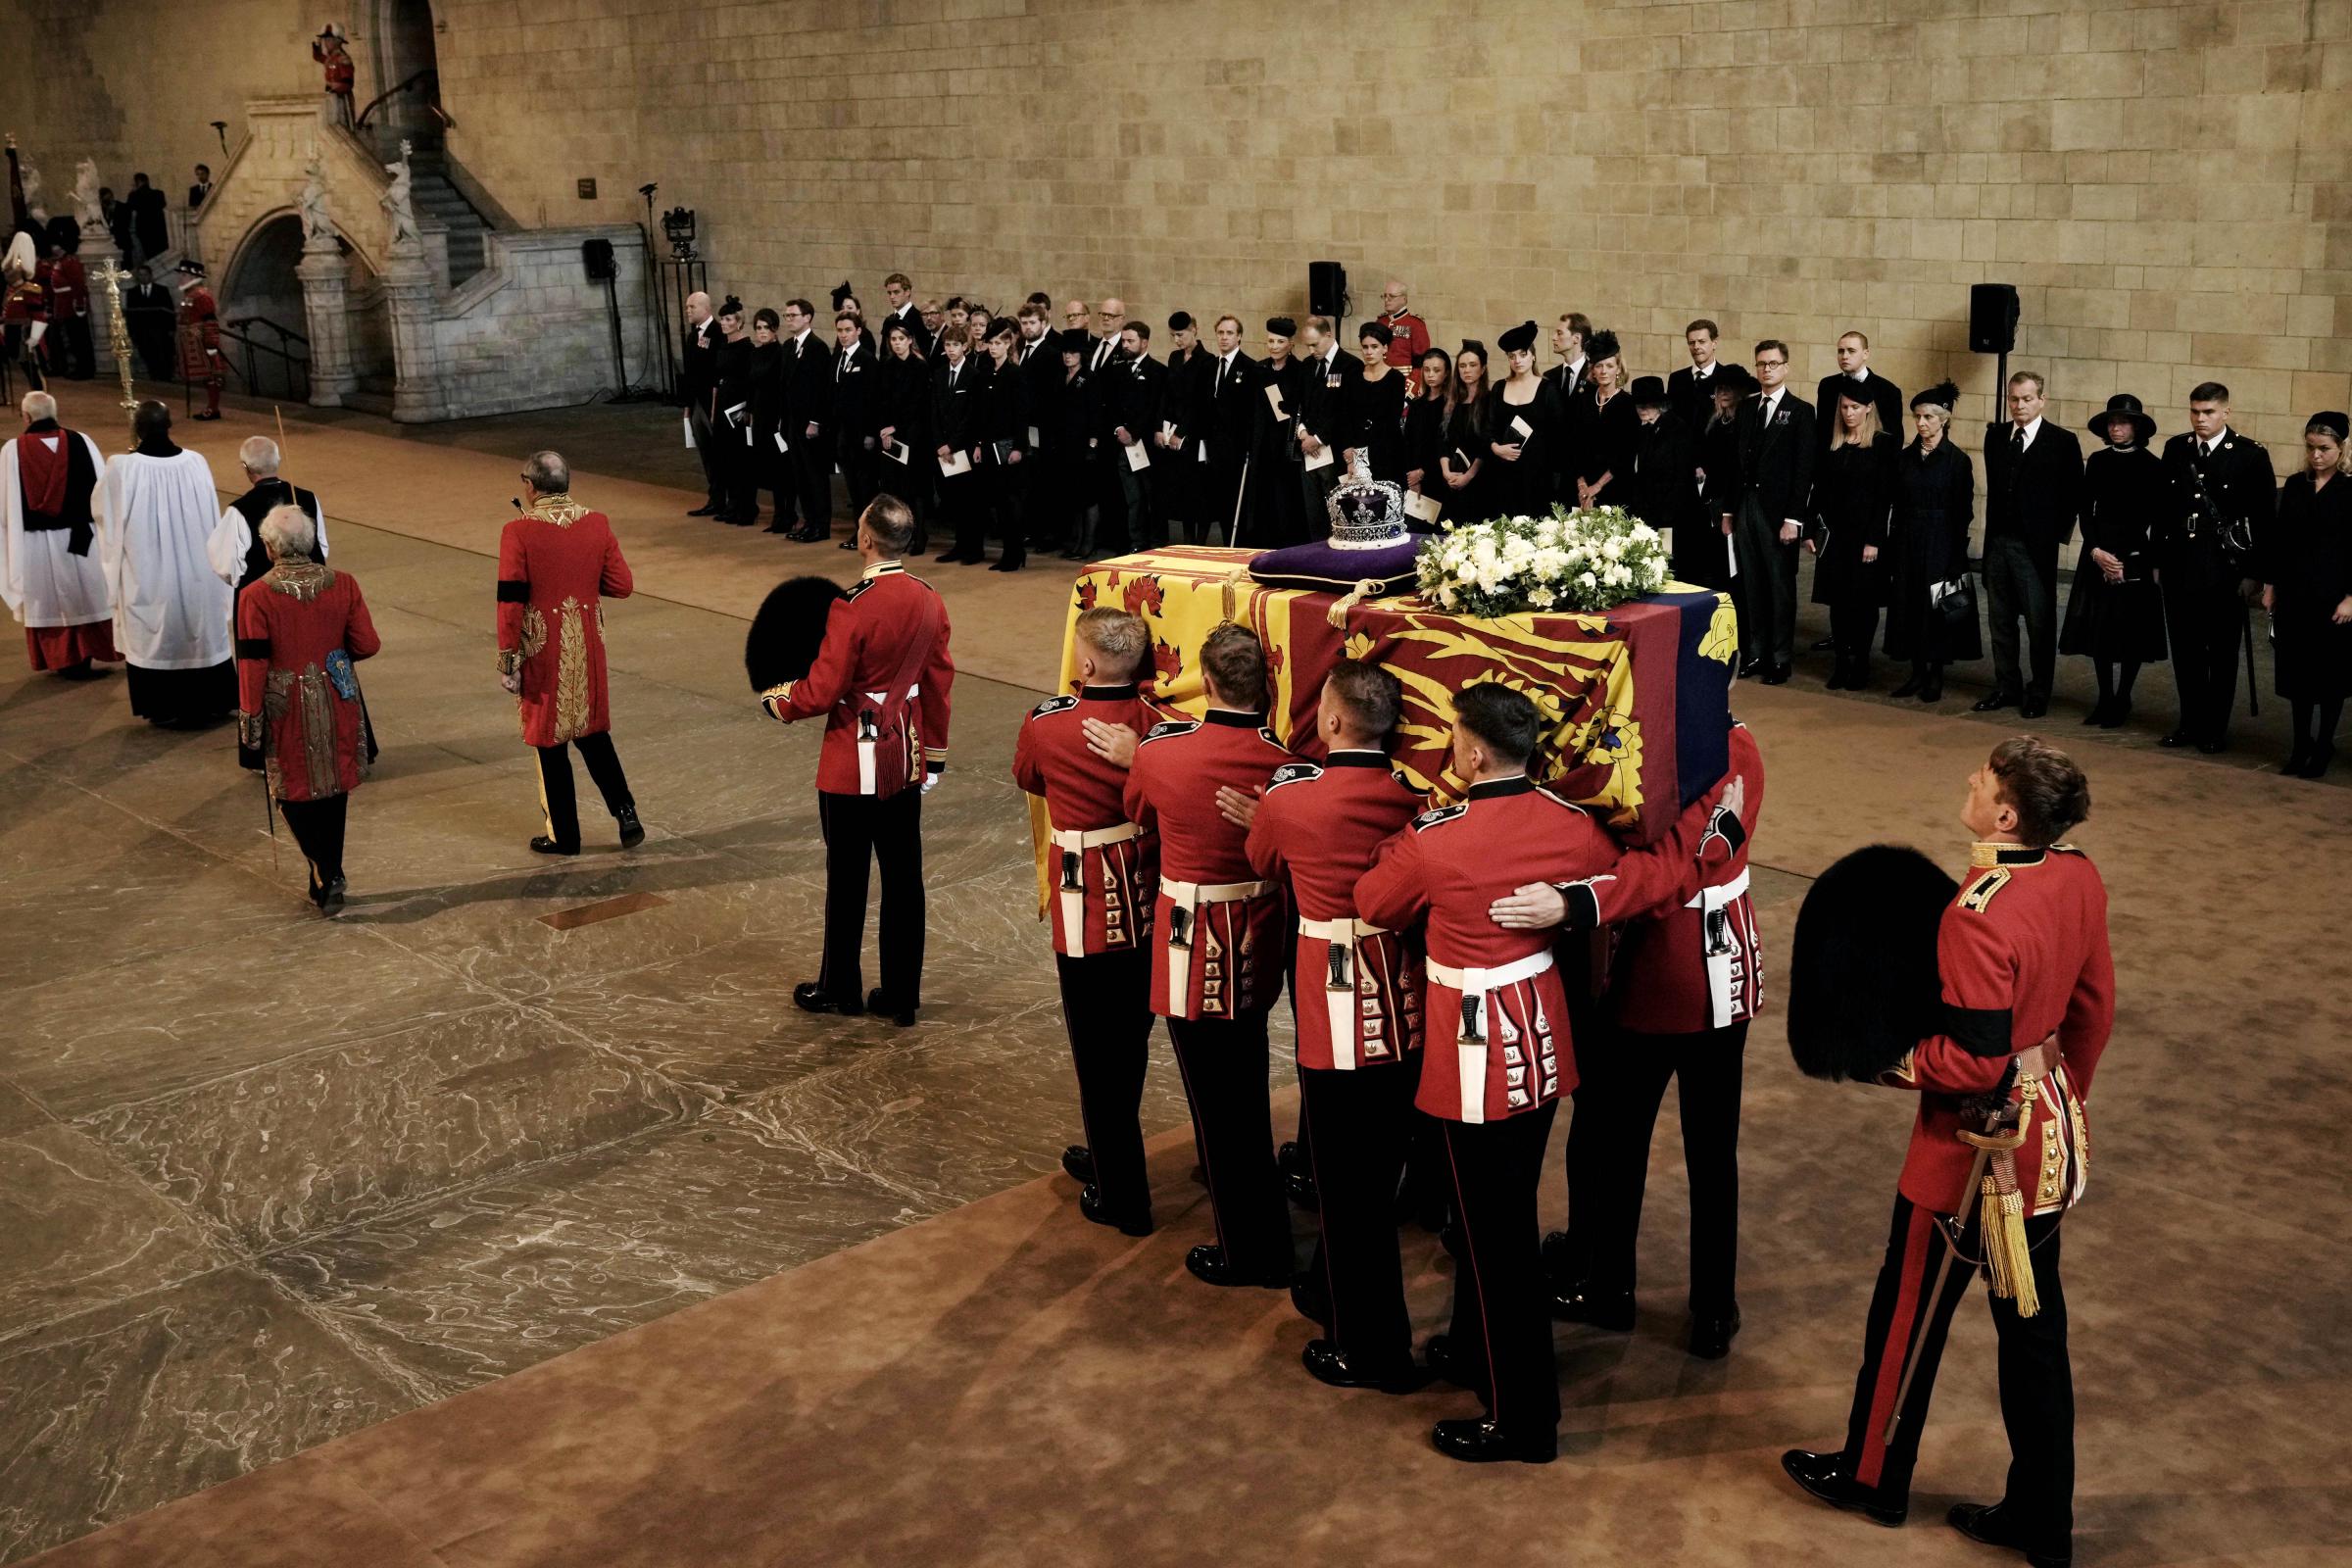 The Queen's Funeral - 